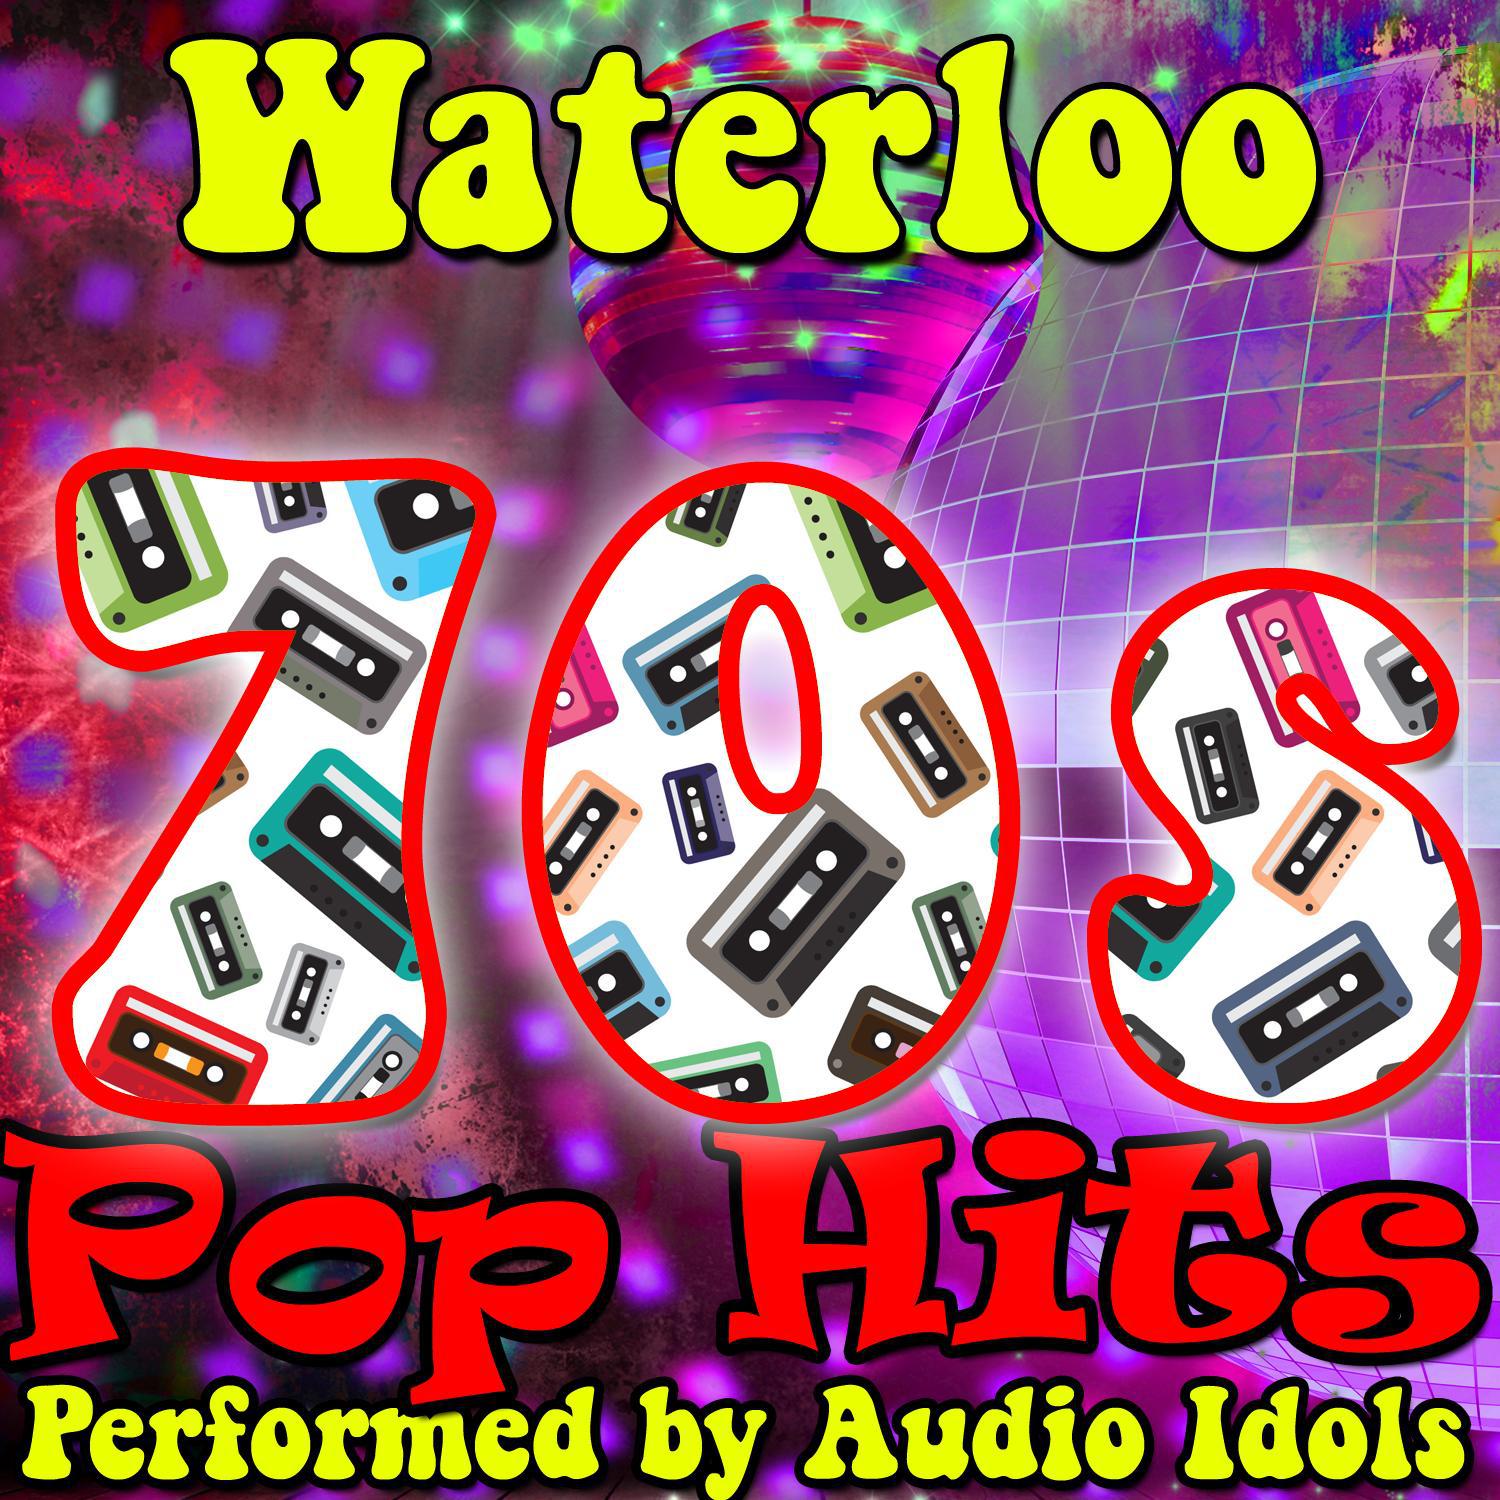 Waterloo: 70s Pop Hits